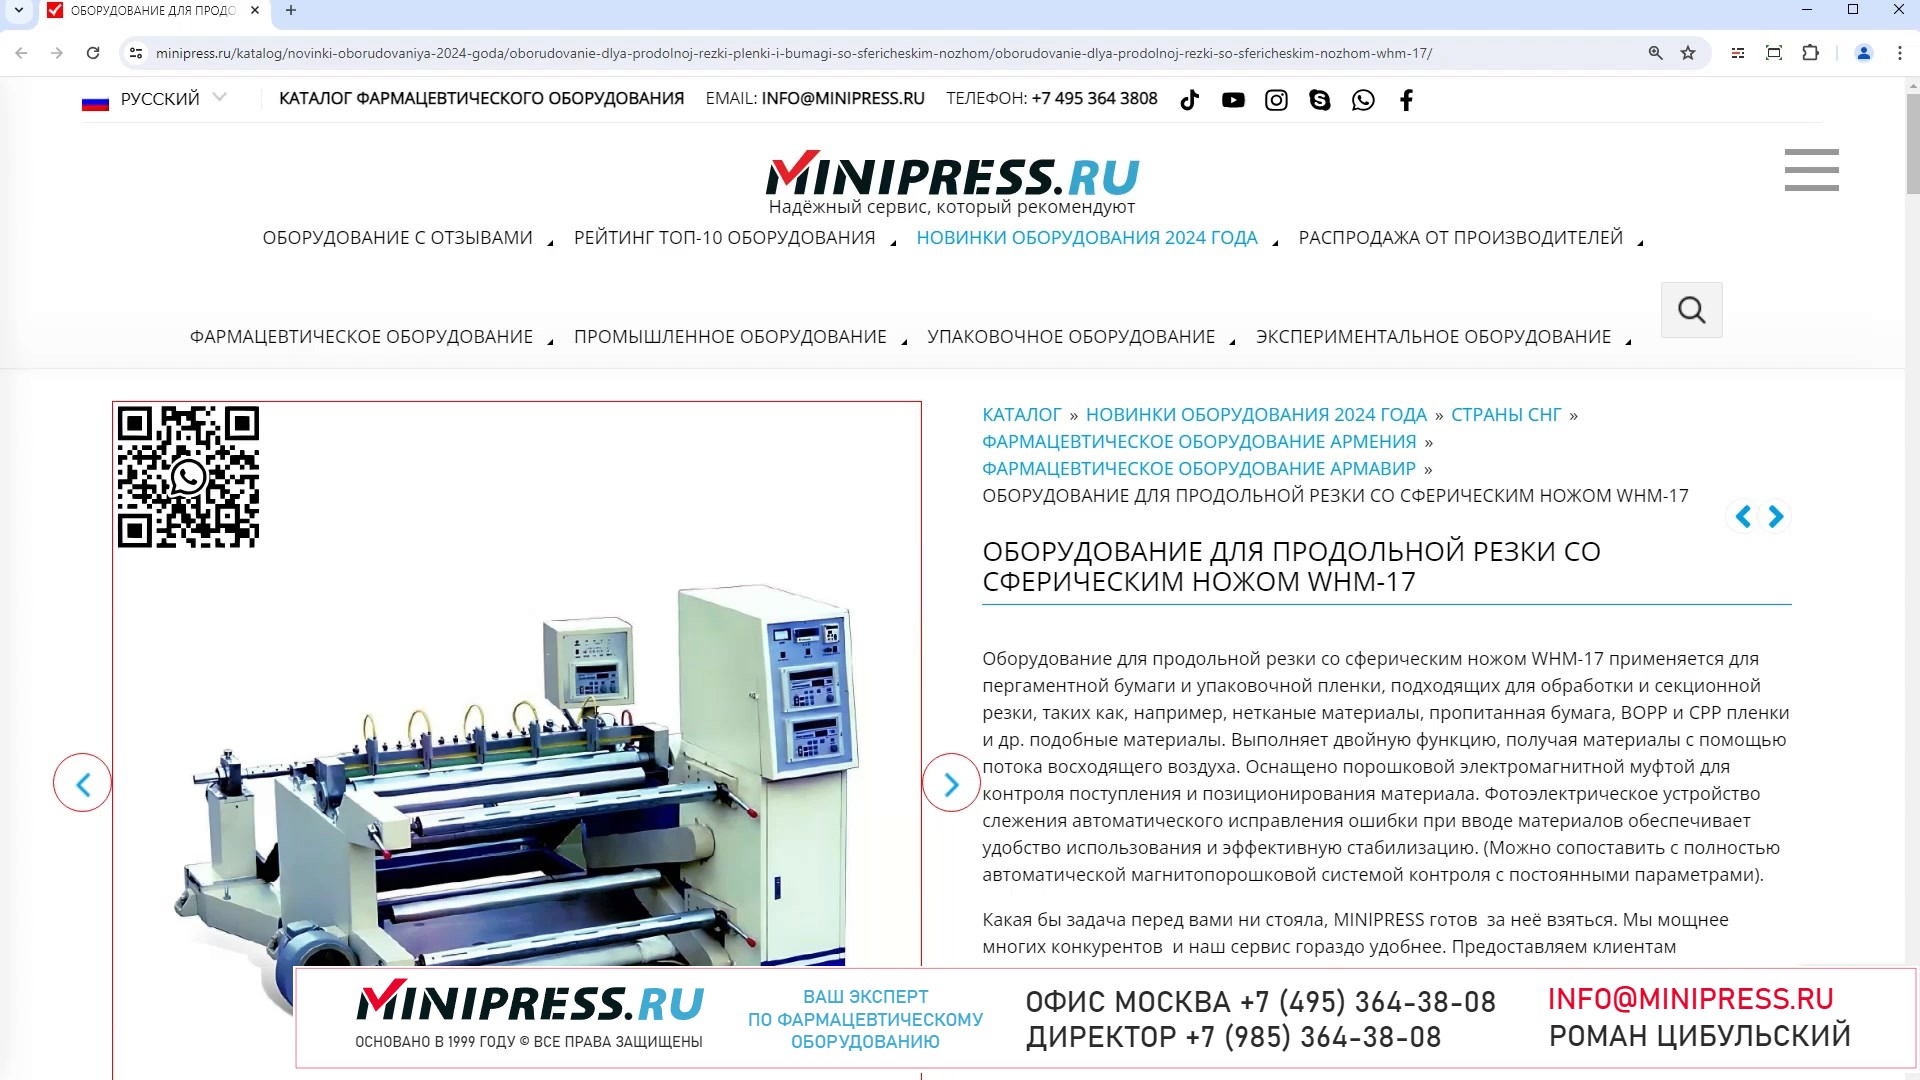 Minipress.ru Оборудование для продольной резки со сферическим ножом WHM-17